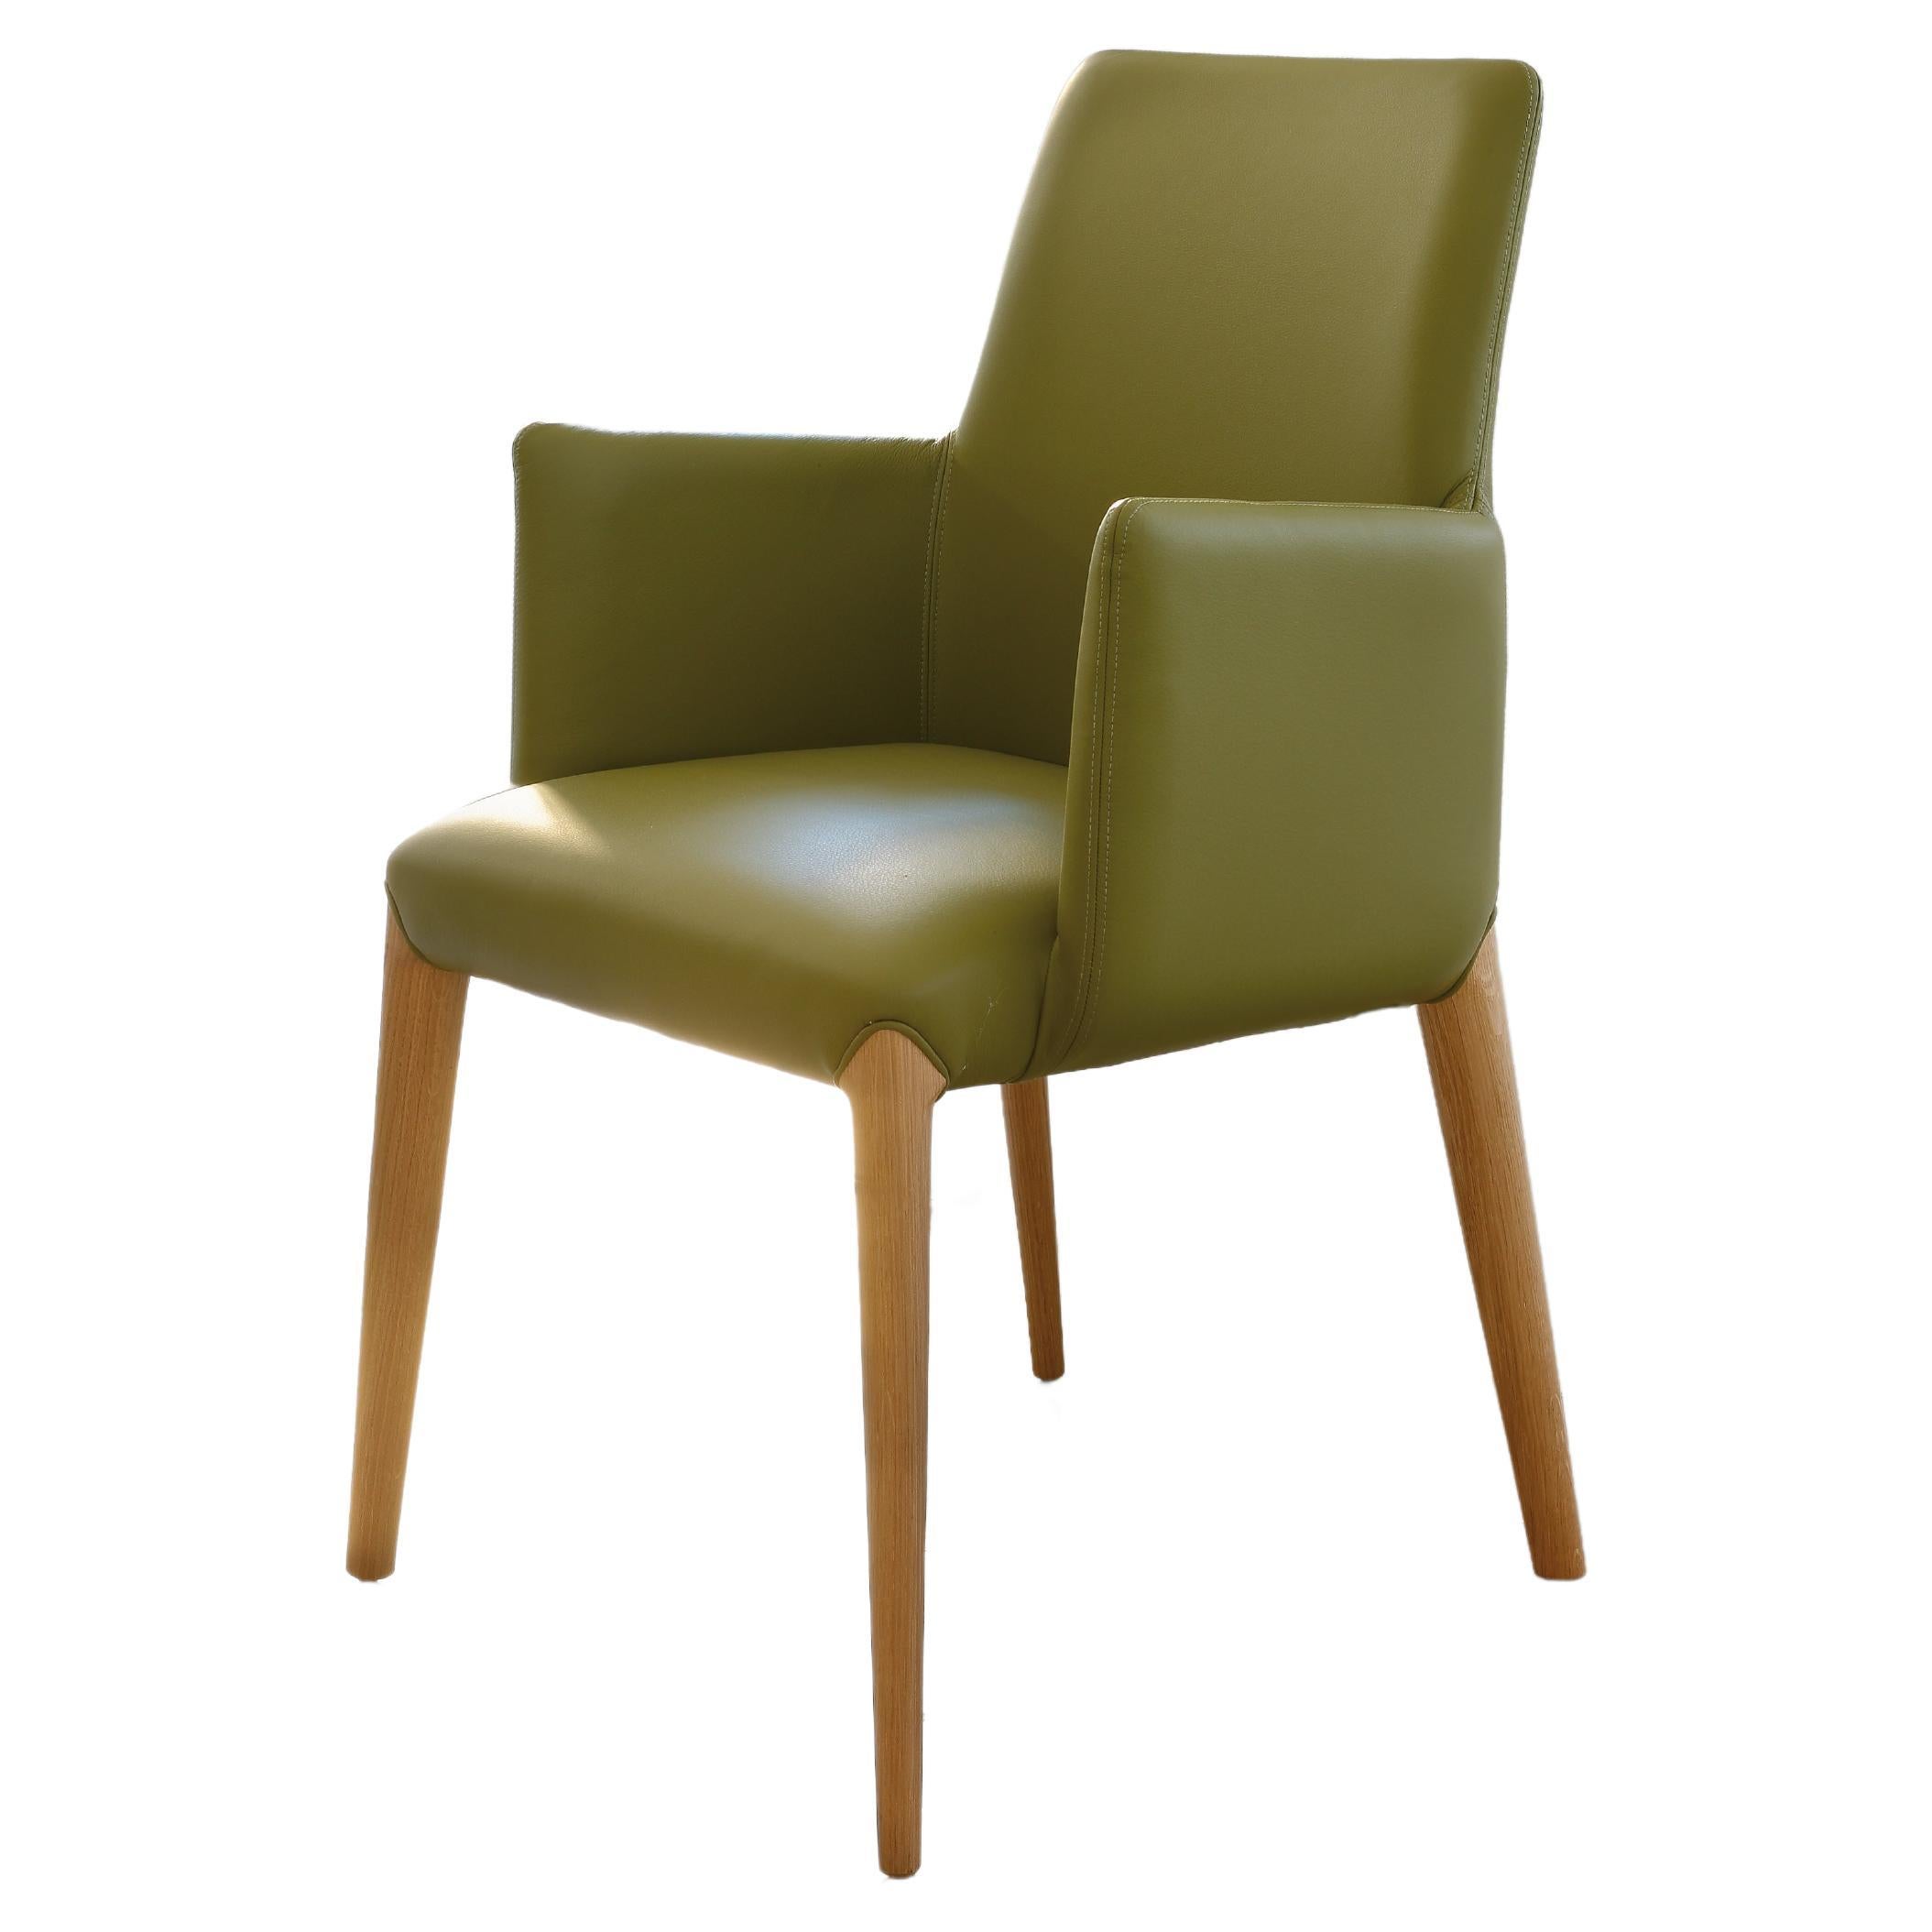 La chaise Ines est une excellente fabrication italienne.
Le cadre en bois massif est courbé à la main et travaillé avec habileté.
Peinture couleur noyer ou chêne.
Le padding est doux, confortable et en même temps durable, le cuir et tous les